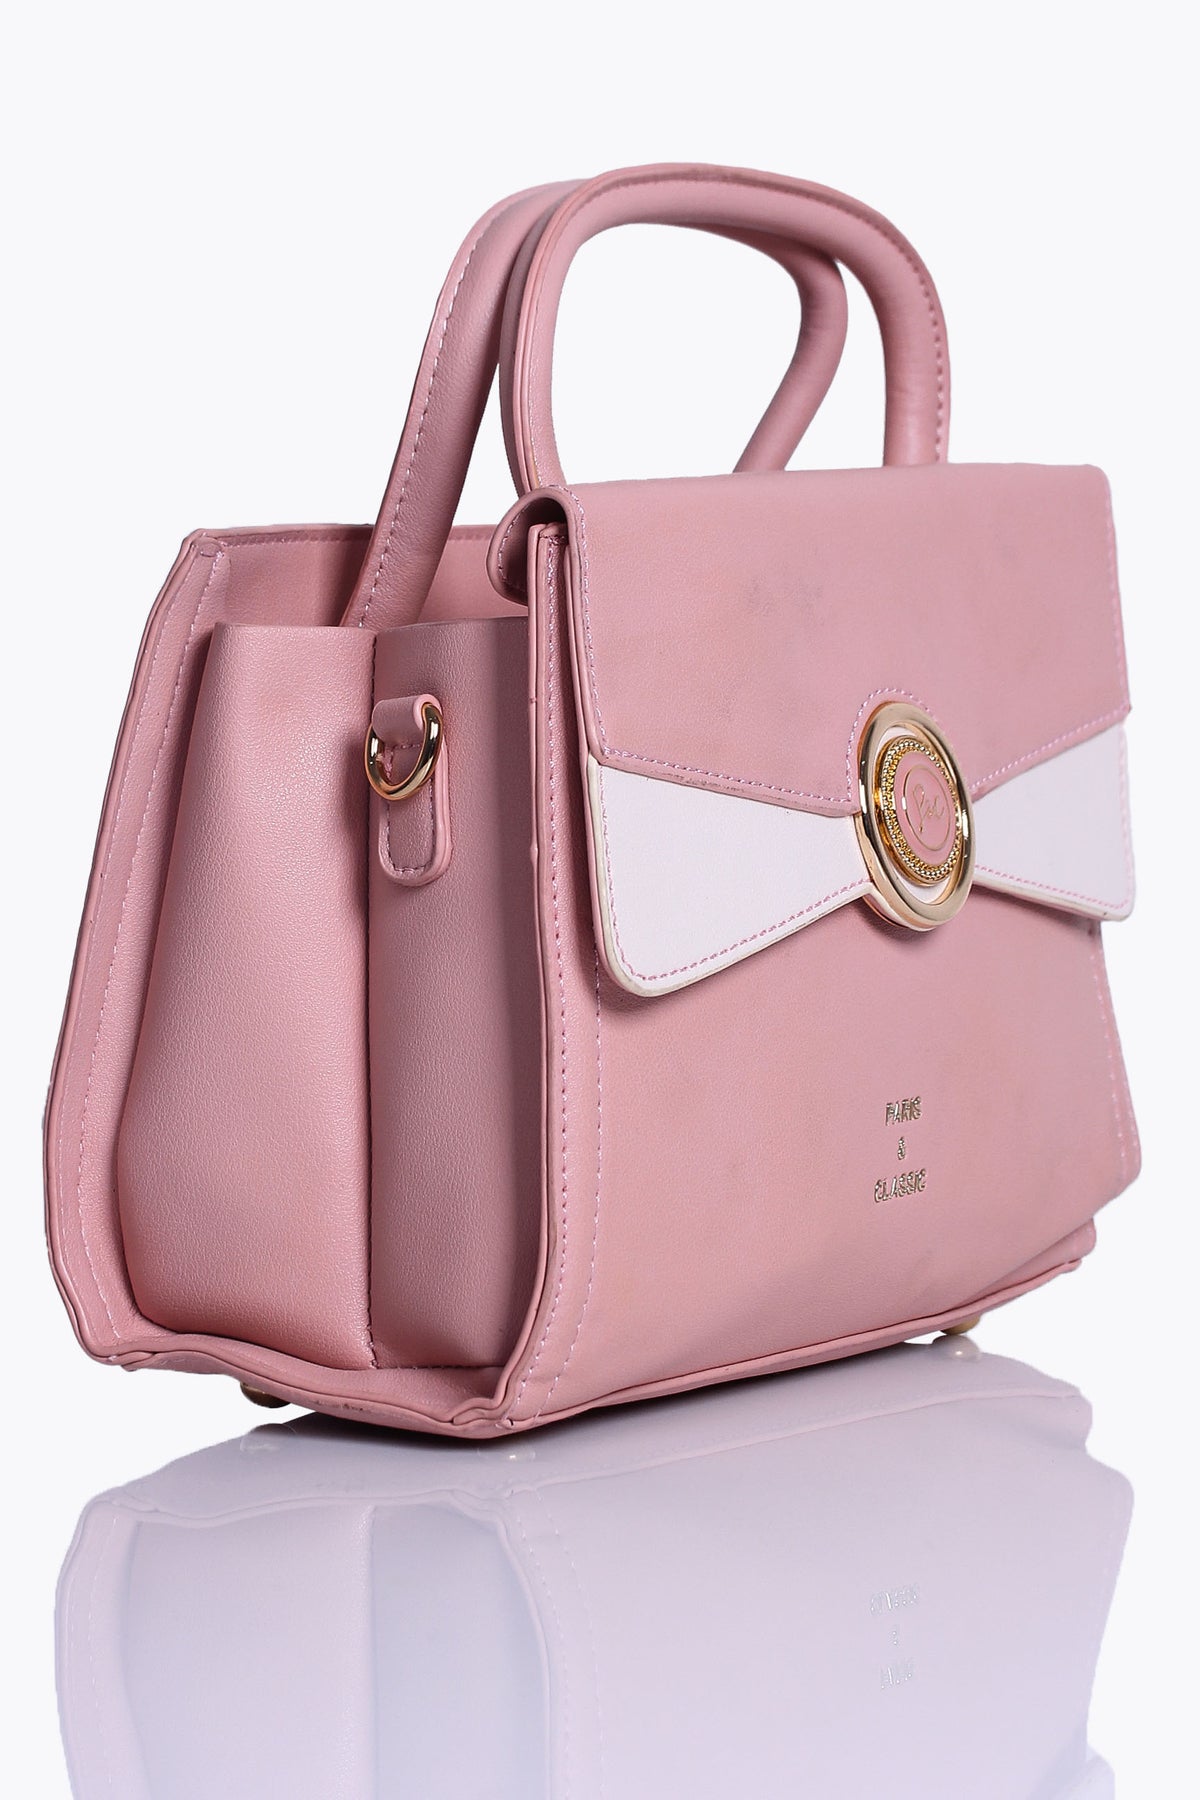 Ladies Casual Hand Bag D-31561 Peach